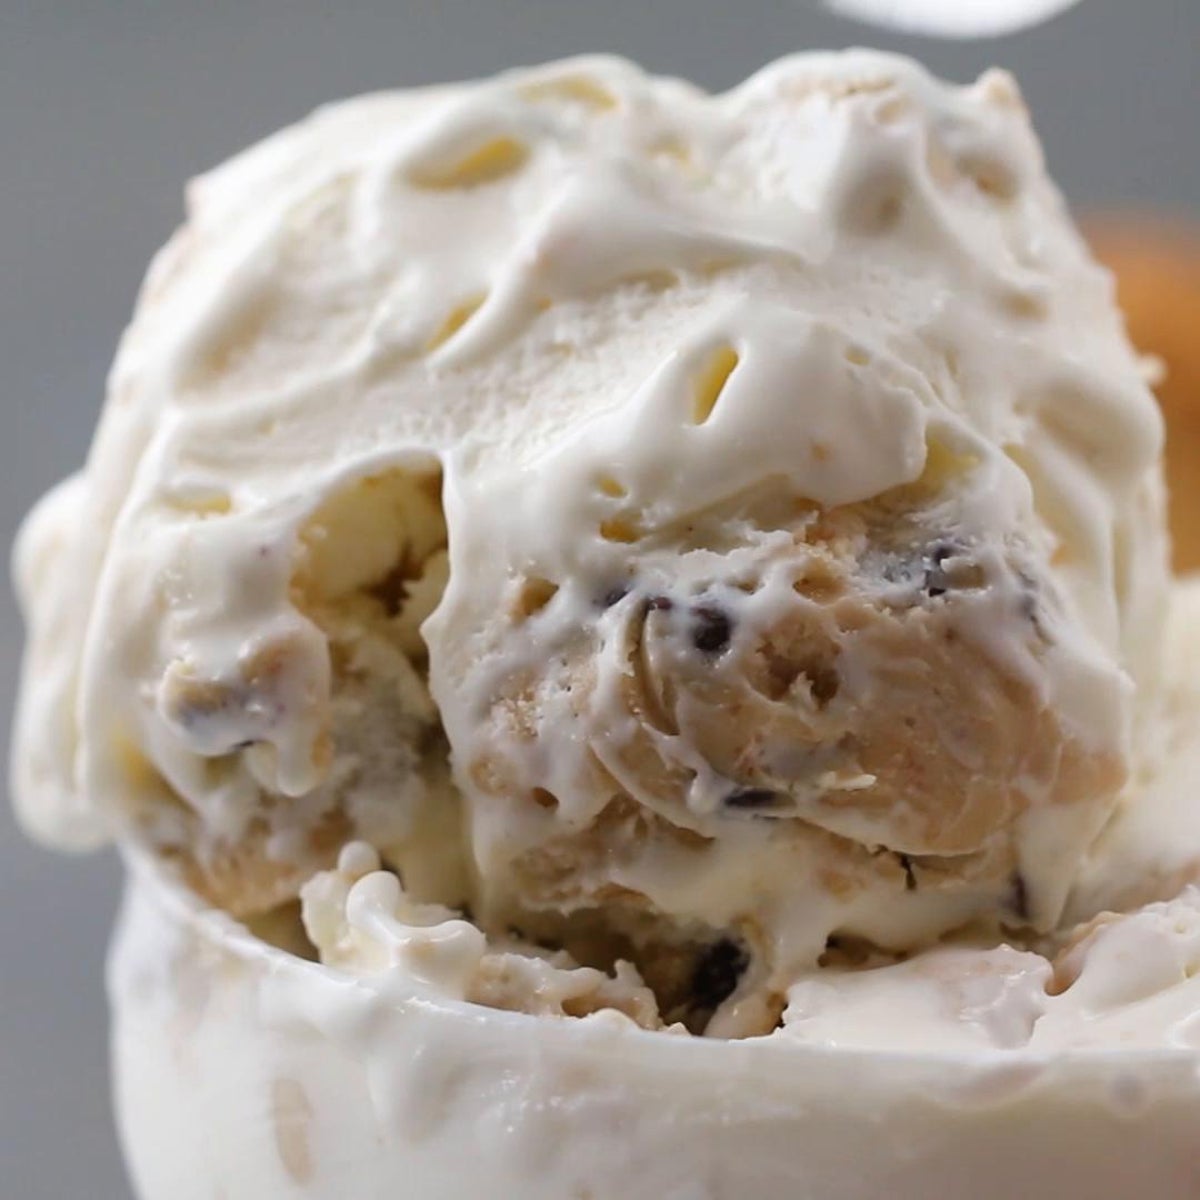 16 Tasty Tips For Making Homemade Ice Cream